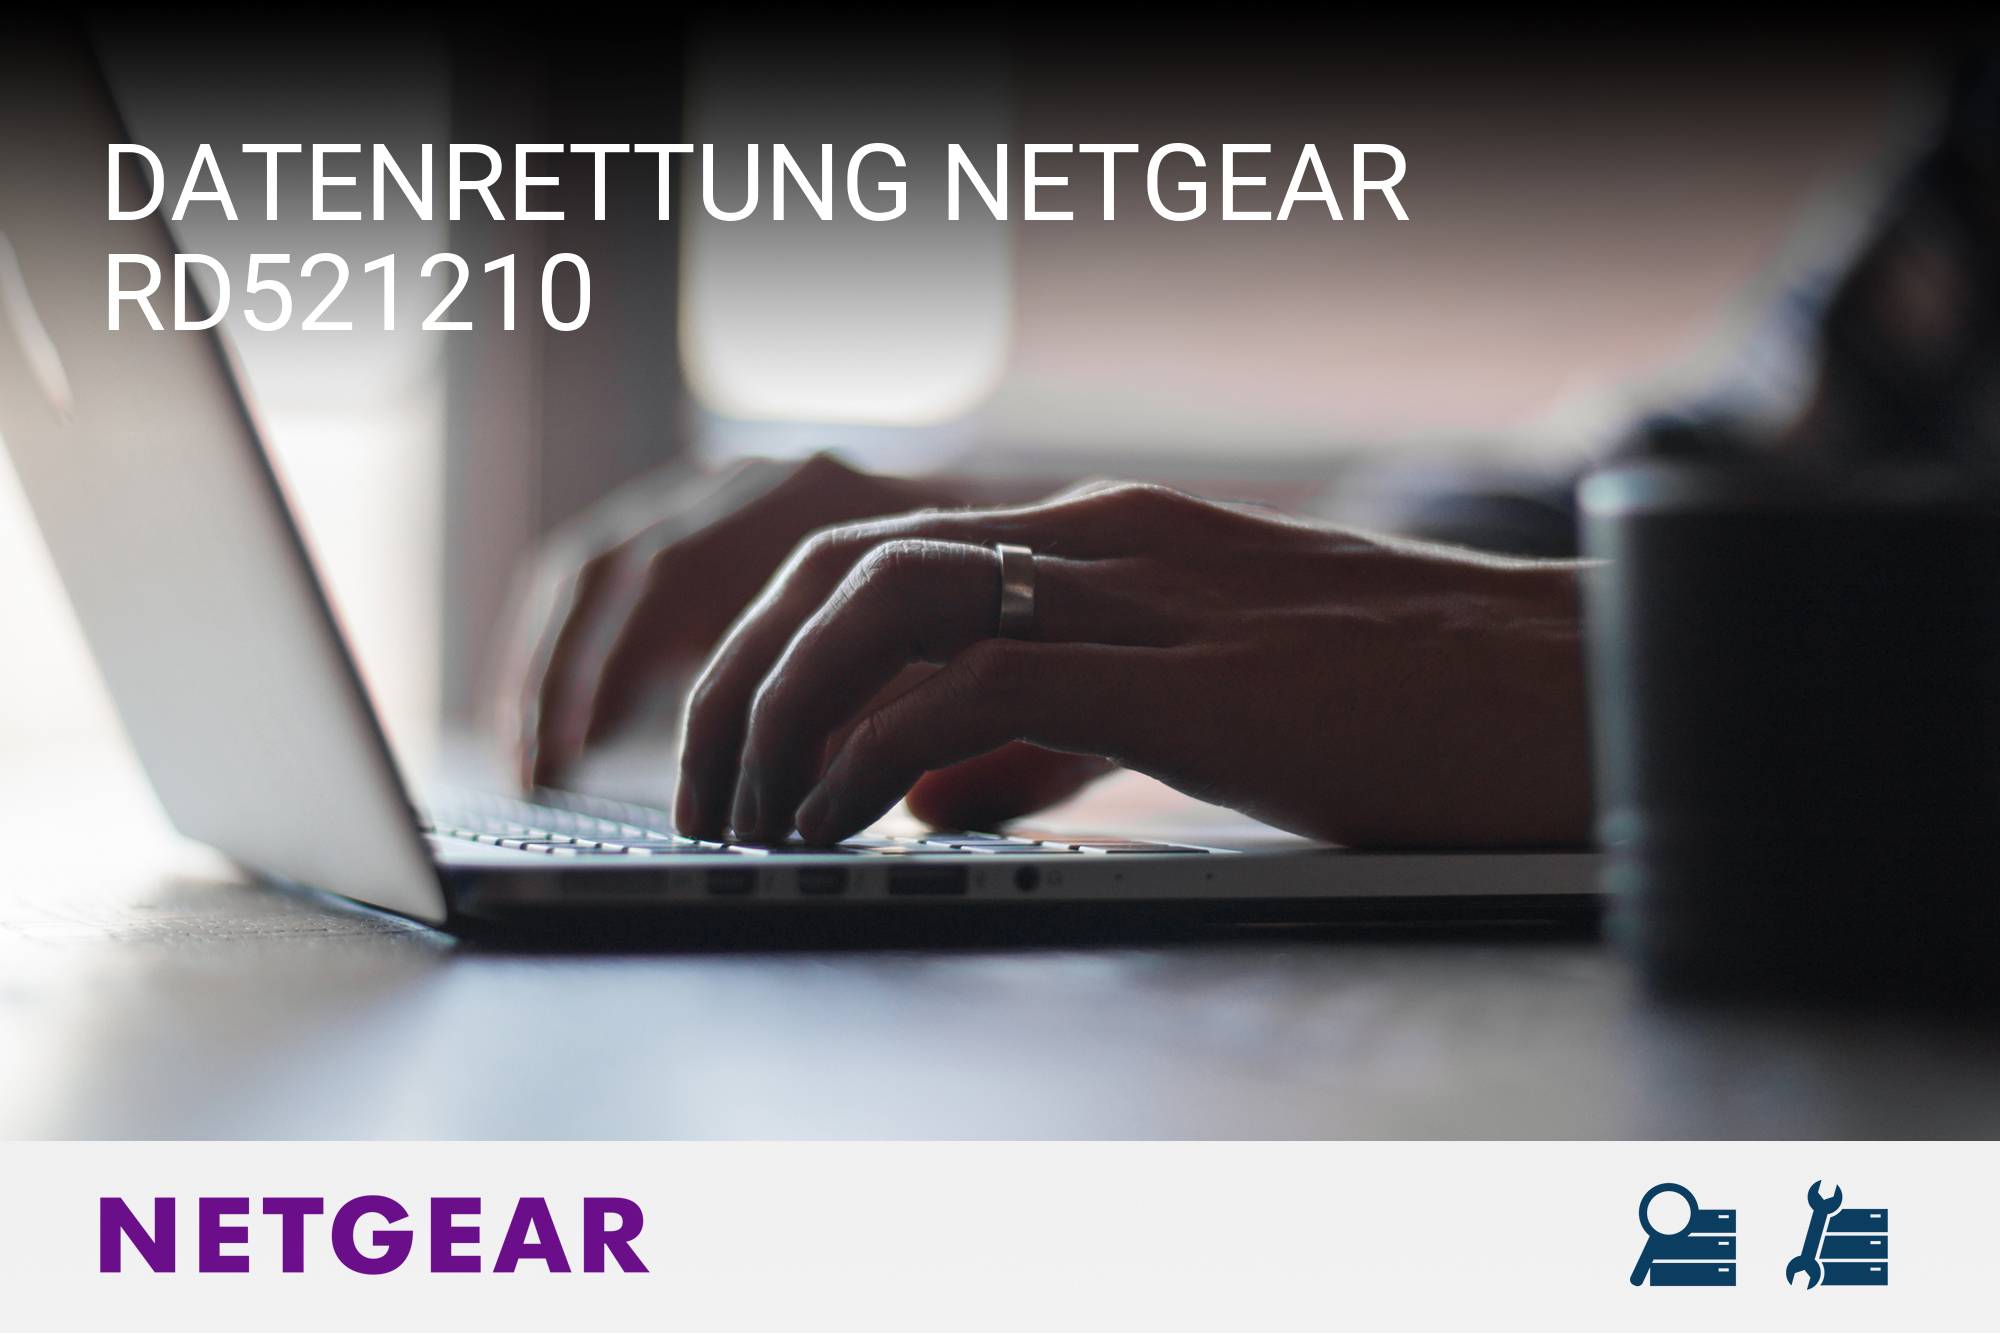 Netgear RD521210